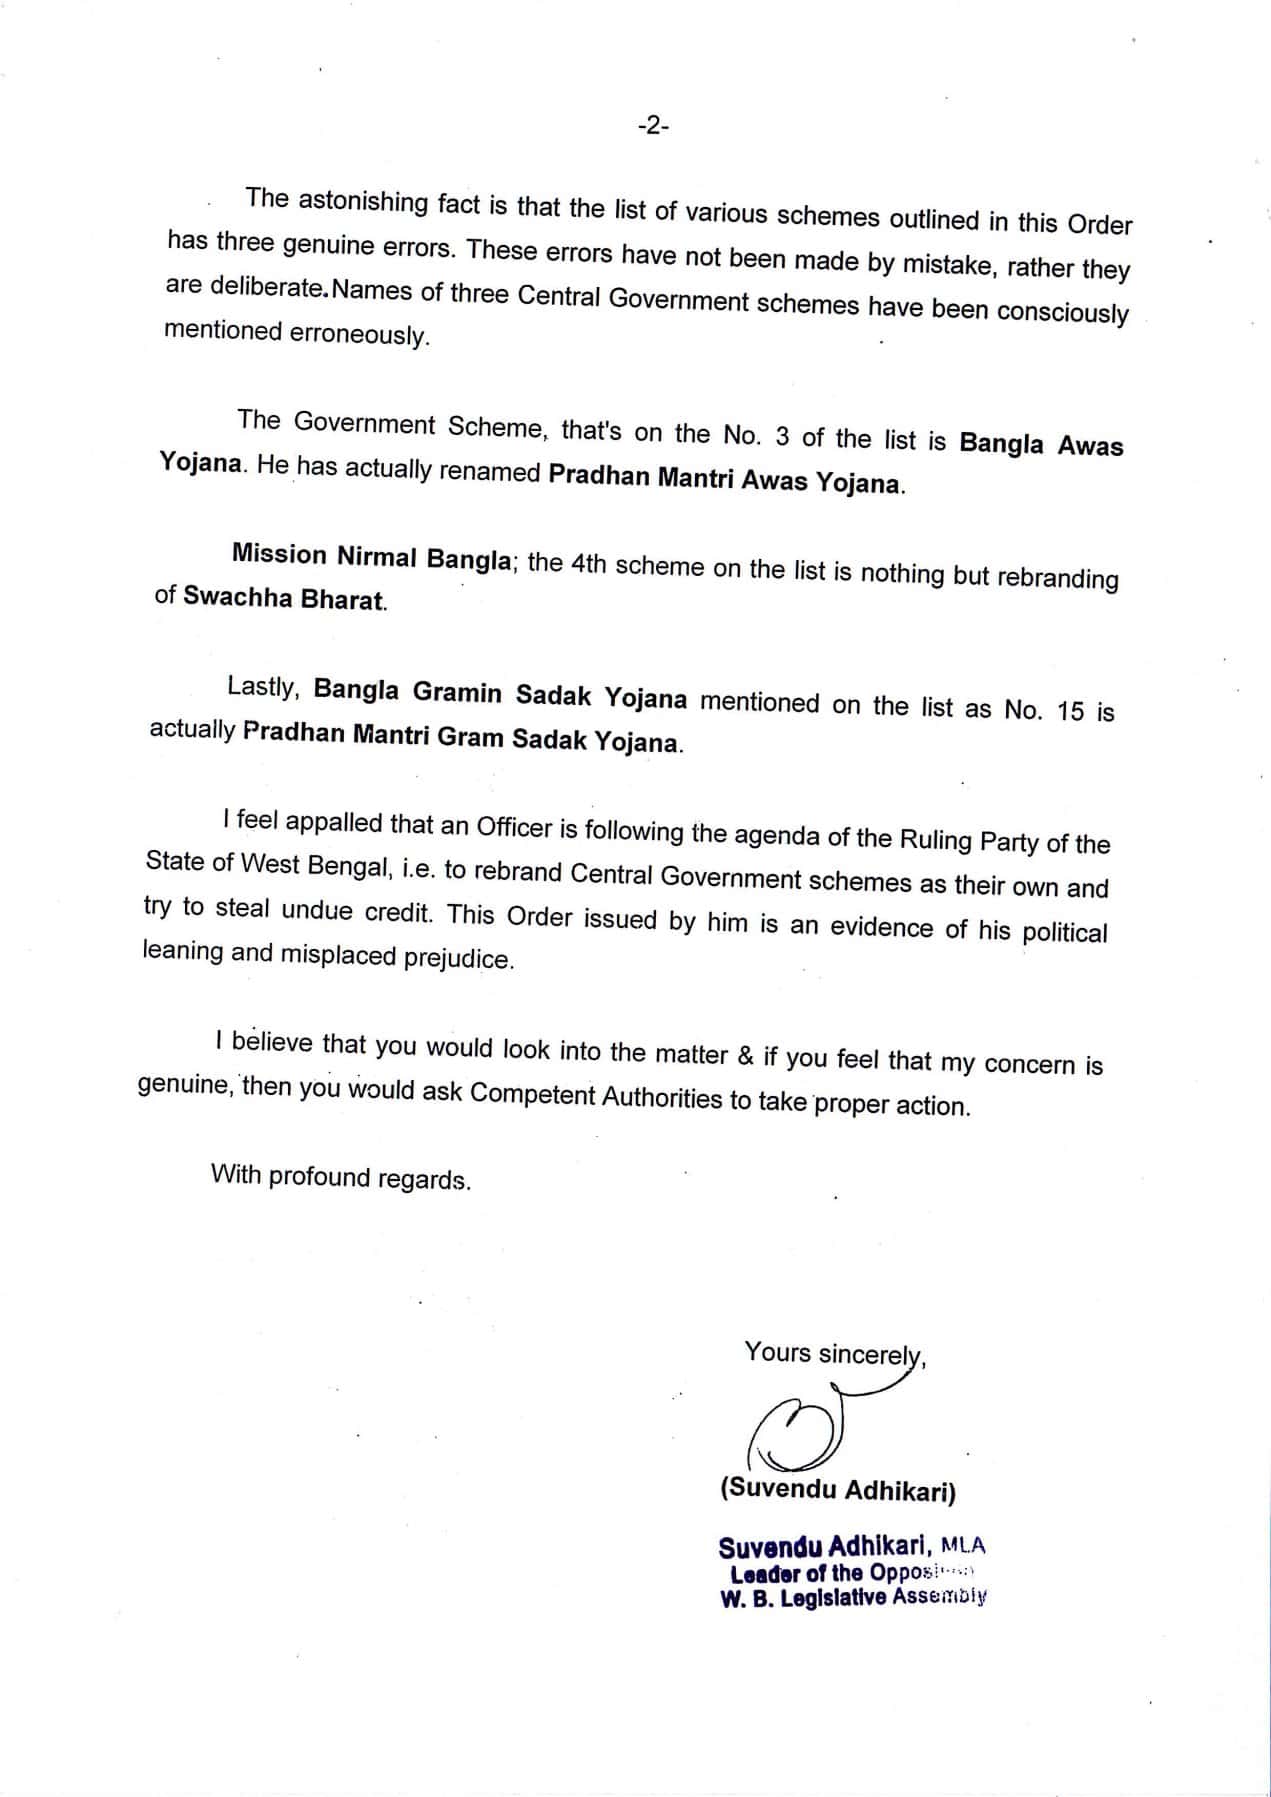 Suvendu Adhikari's letter to PM Modi complaining against the bureaucrats of Bengal